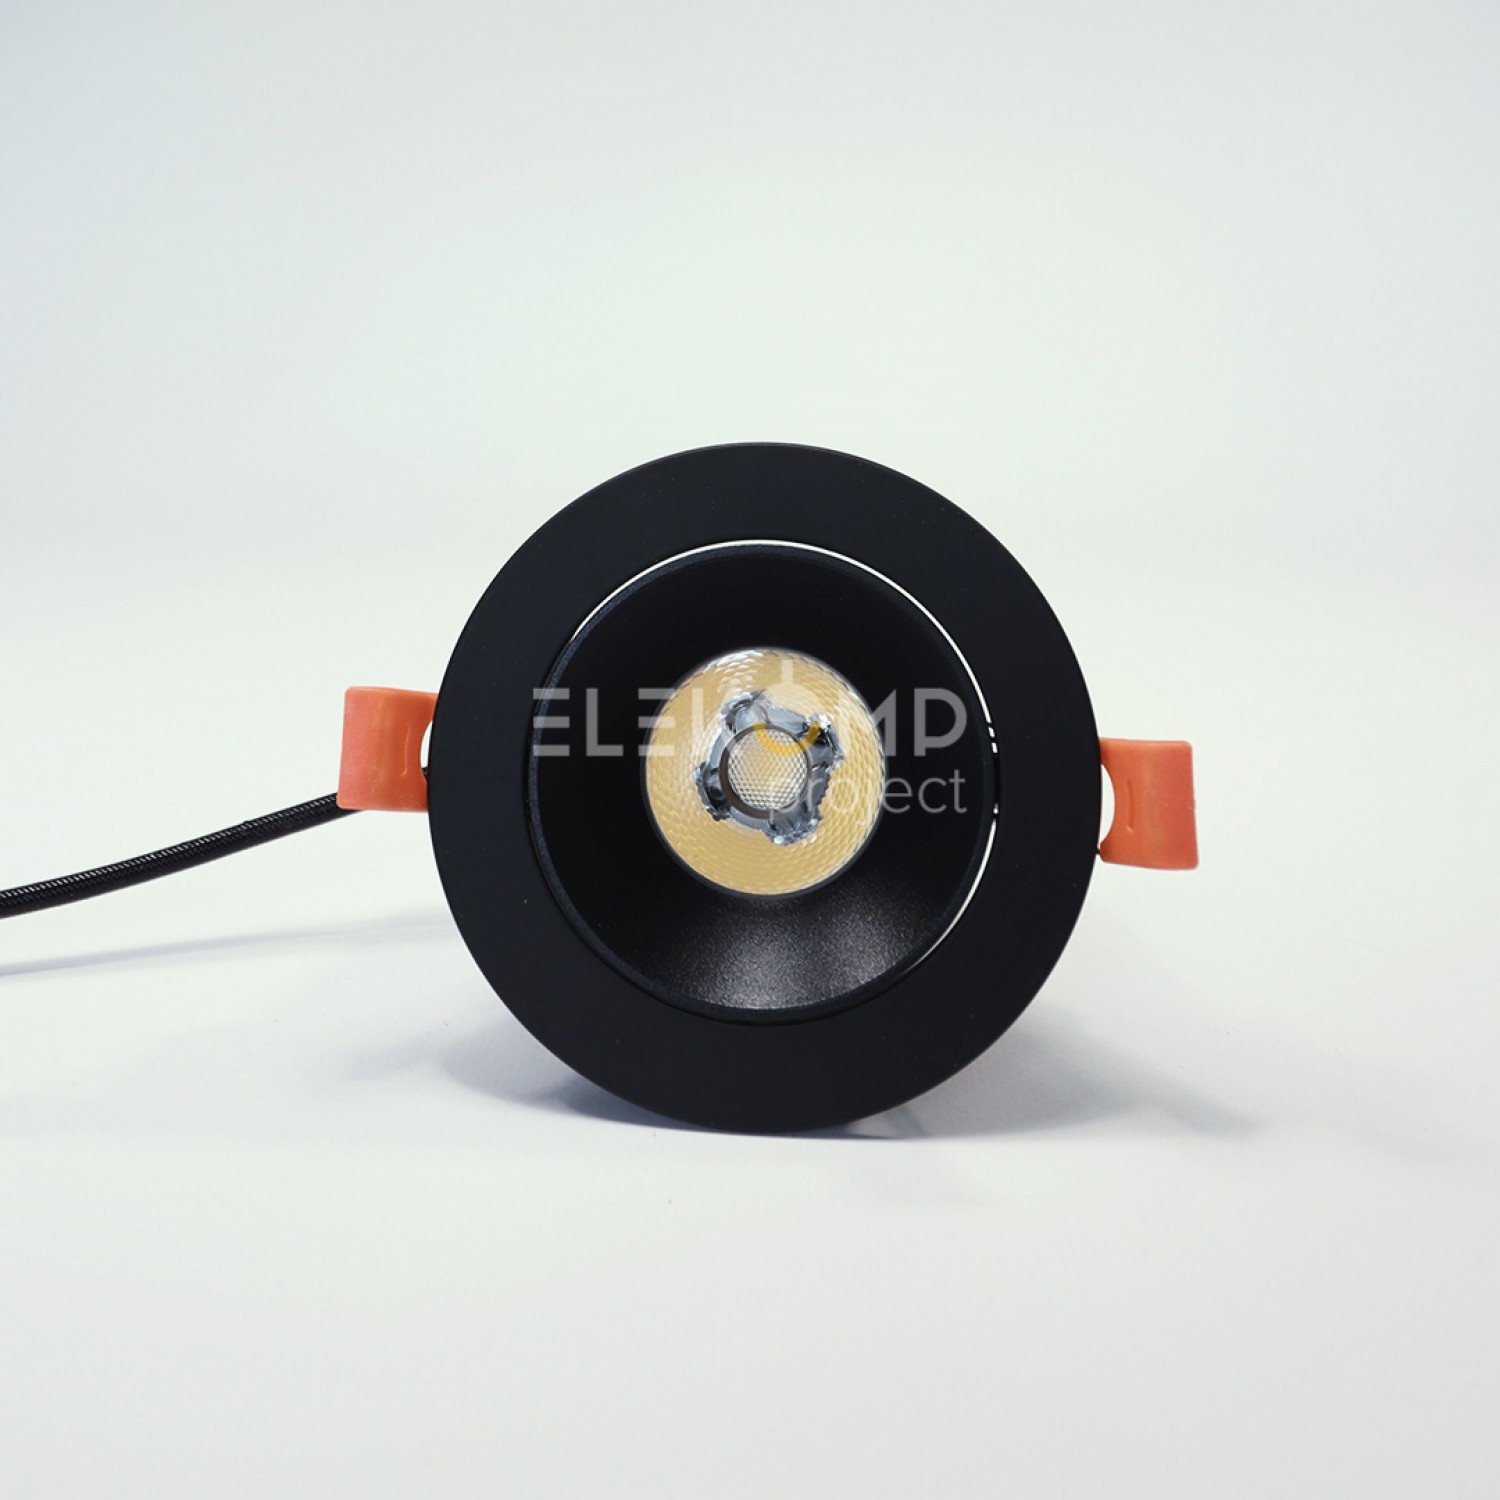 Точковий світильник Elekomp Pro Downlight Premium 12w S 246724